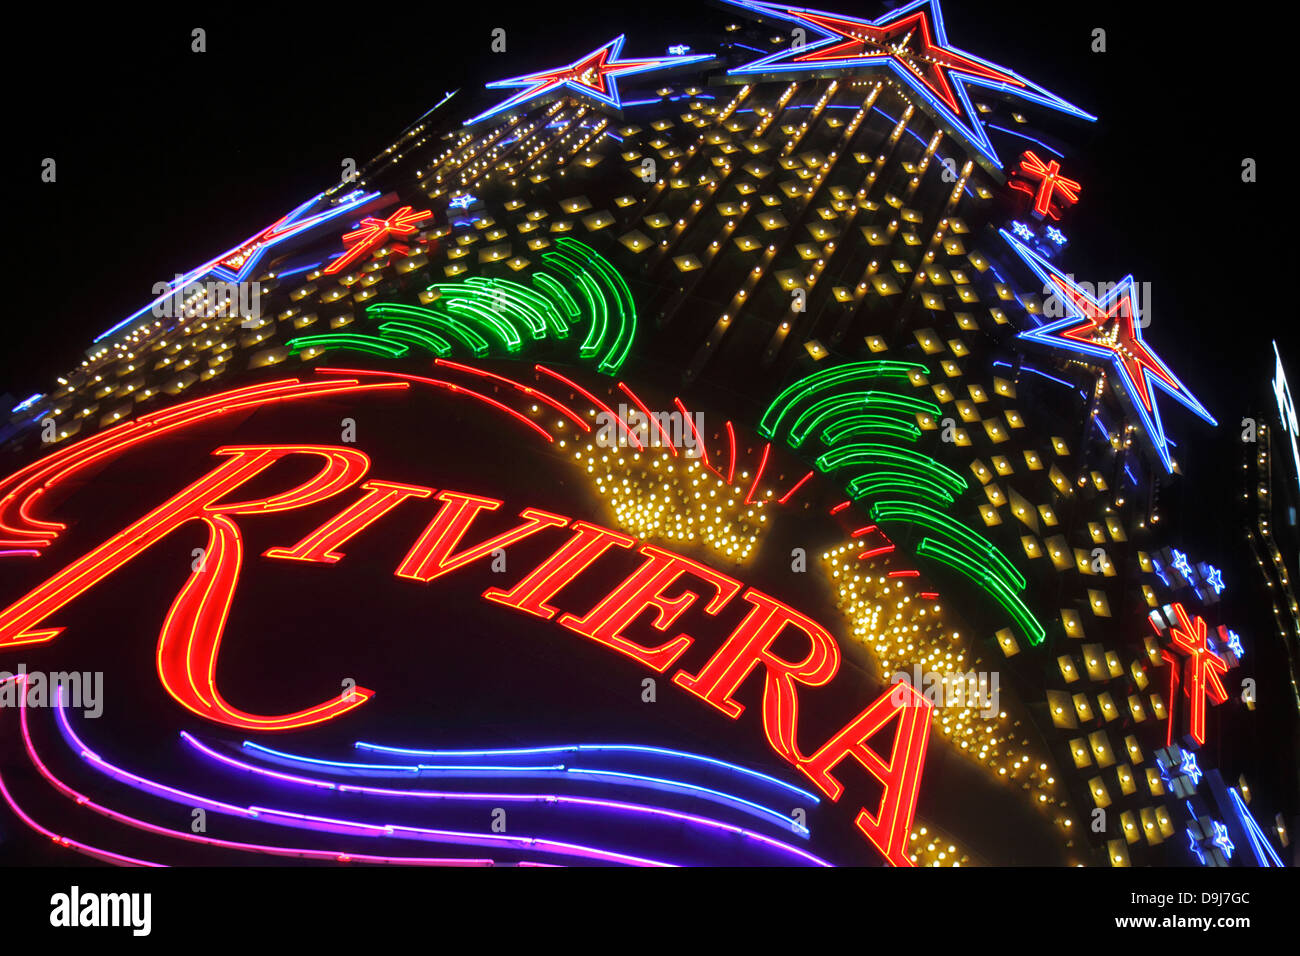 104 The Riviera Hotel Casino On The Las Vegas Strip Closing Stock